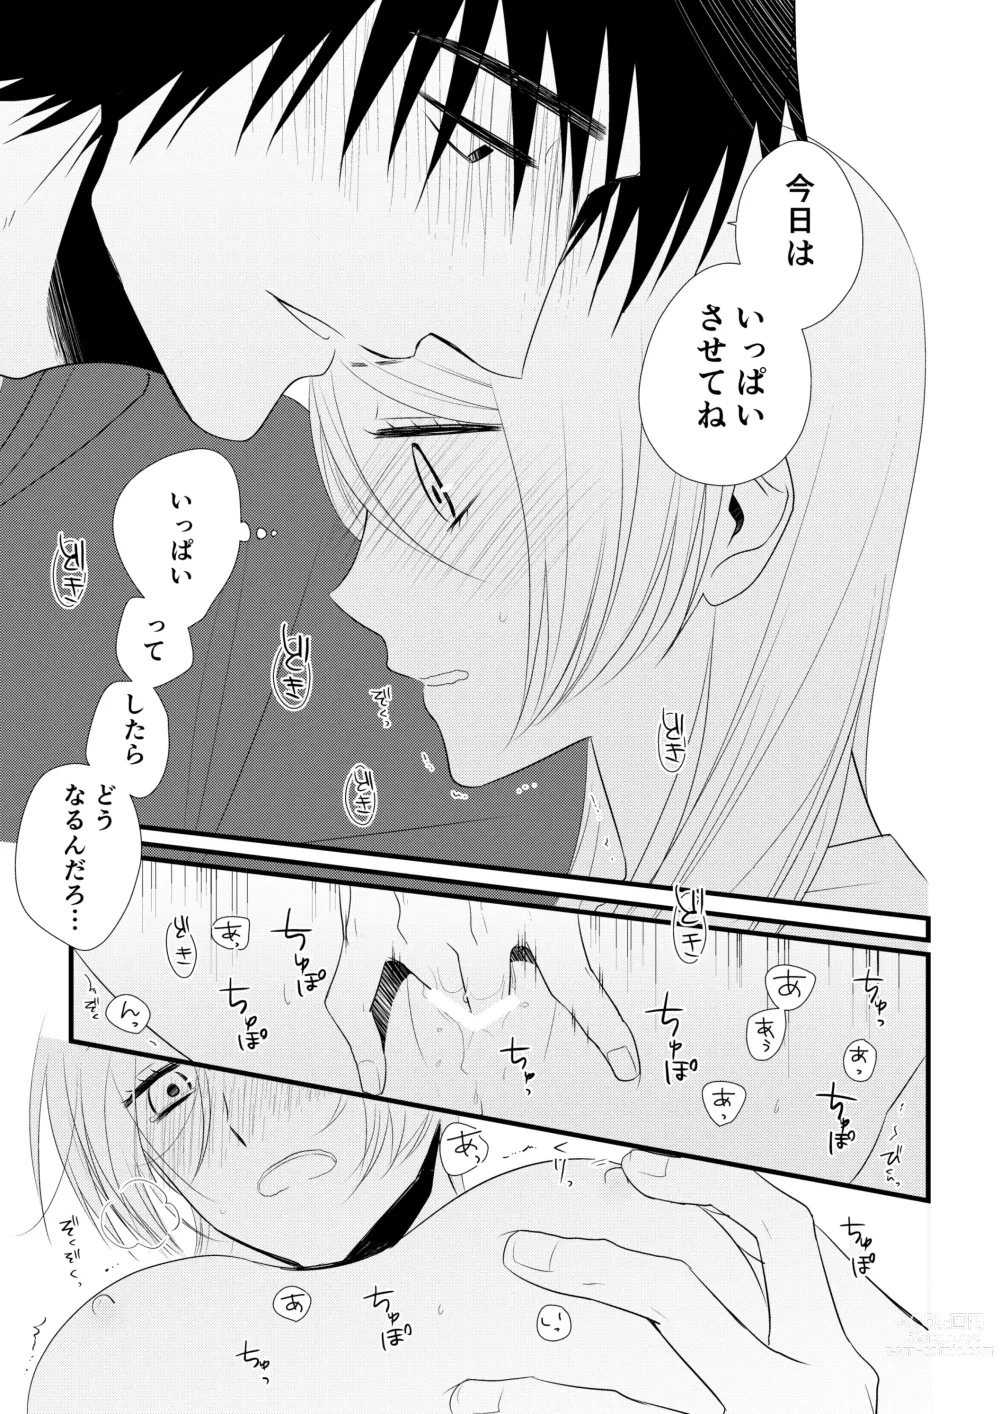 Page 126 of doujinshi Itsuki to Yuusei